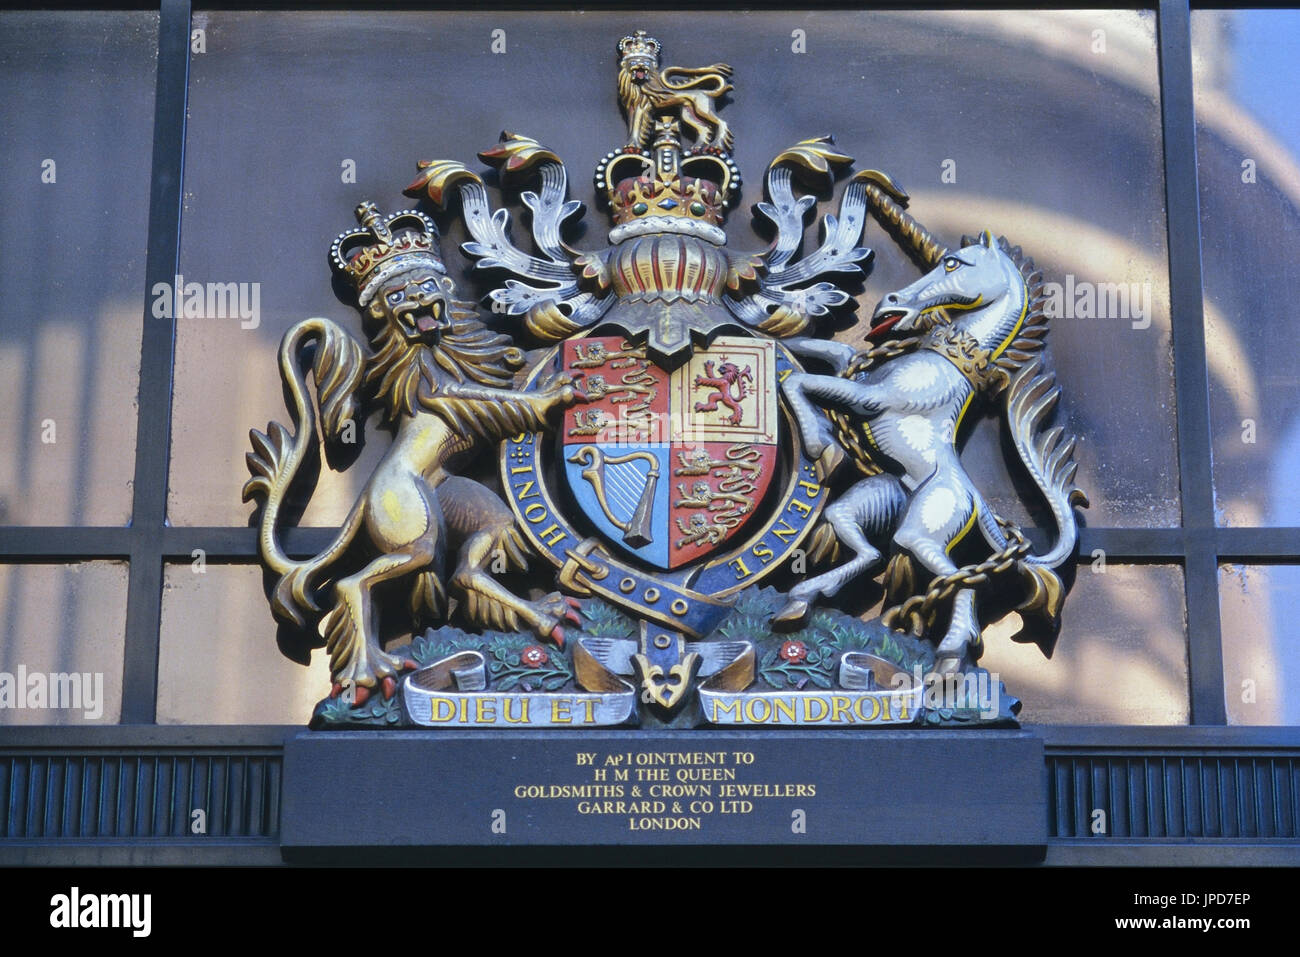 L'ancien Décret de Garrard & Co comme joaillier de la couronne, Mayfair, Londres, Angleterre, Royaume-Uni. Circa 1980 Banque D'Images